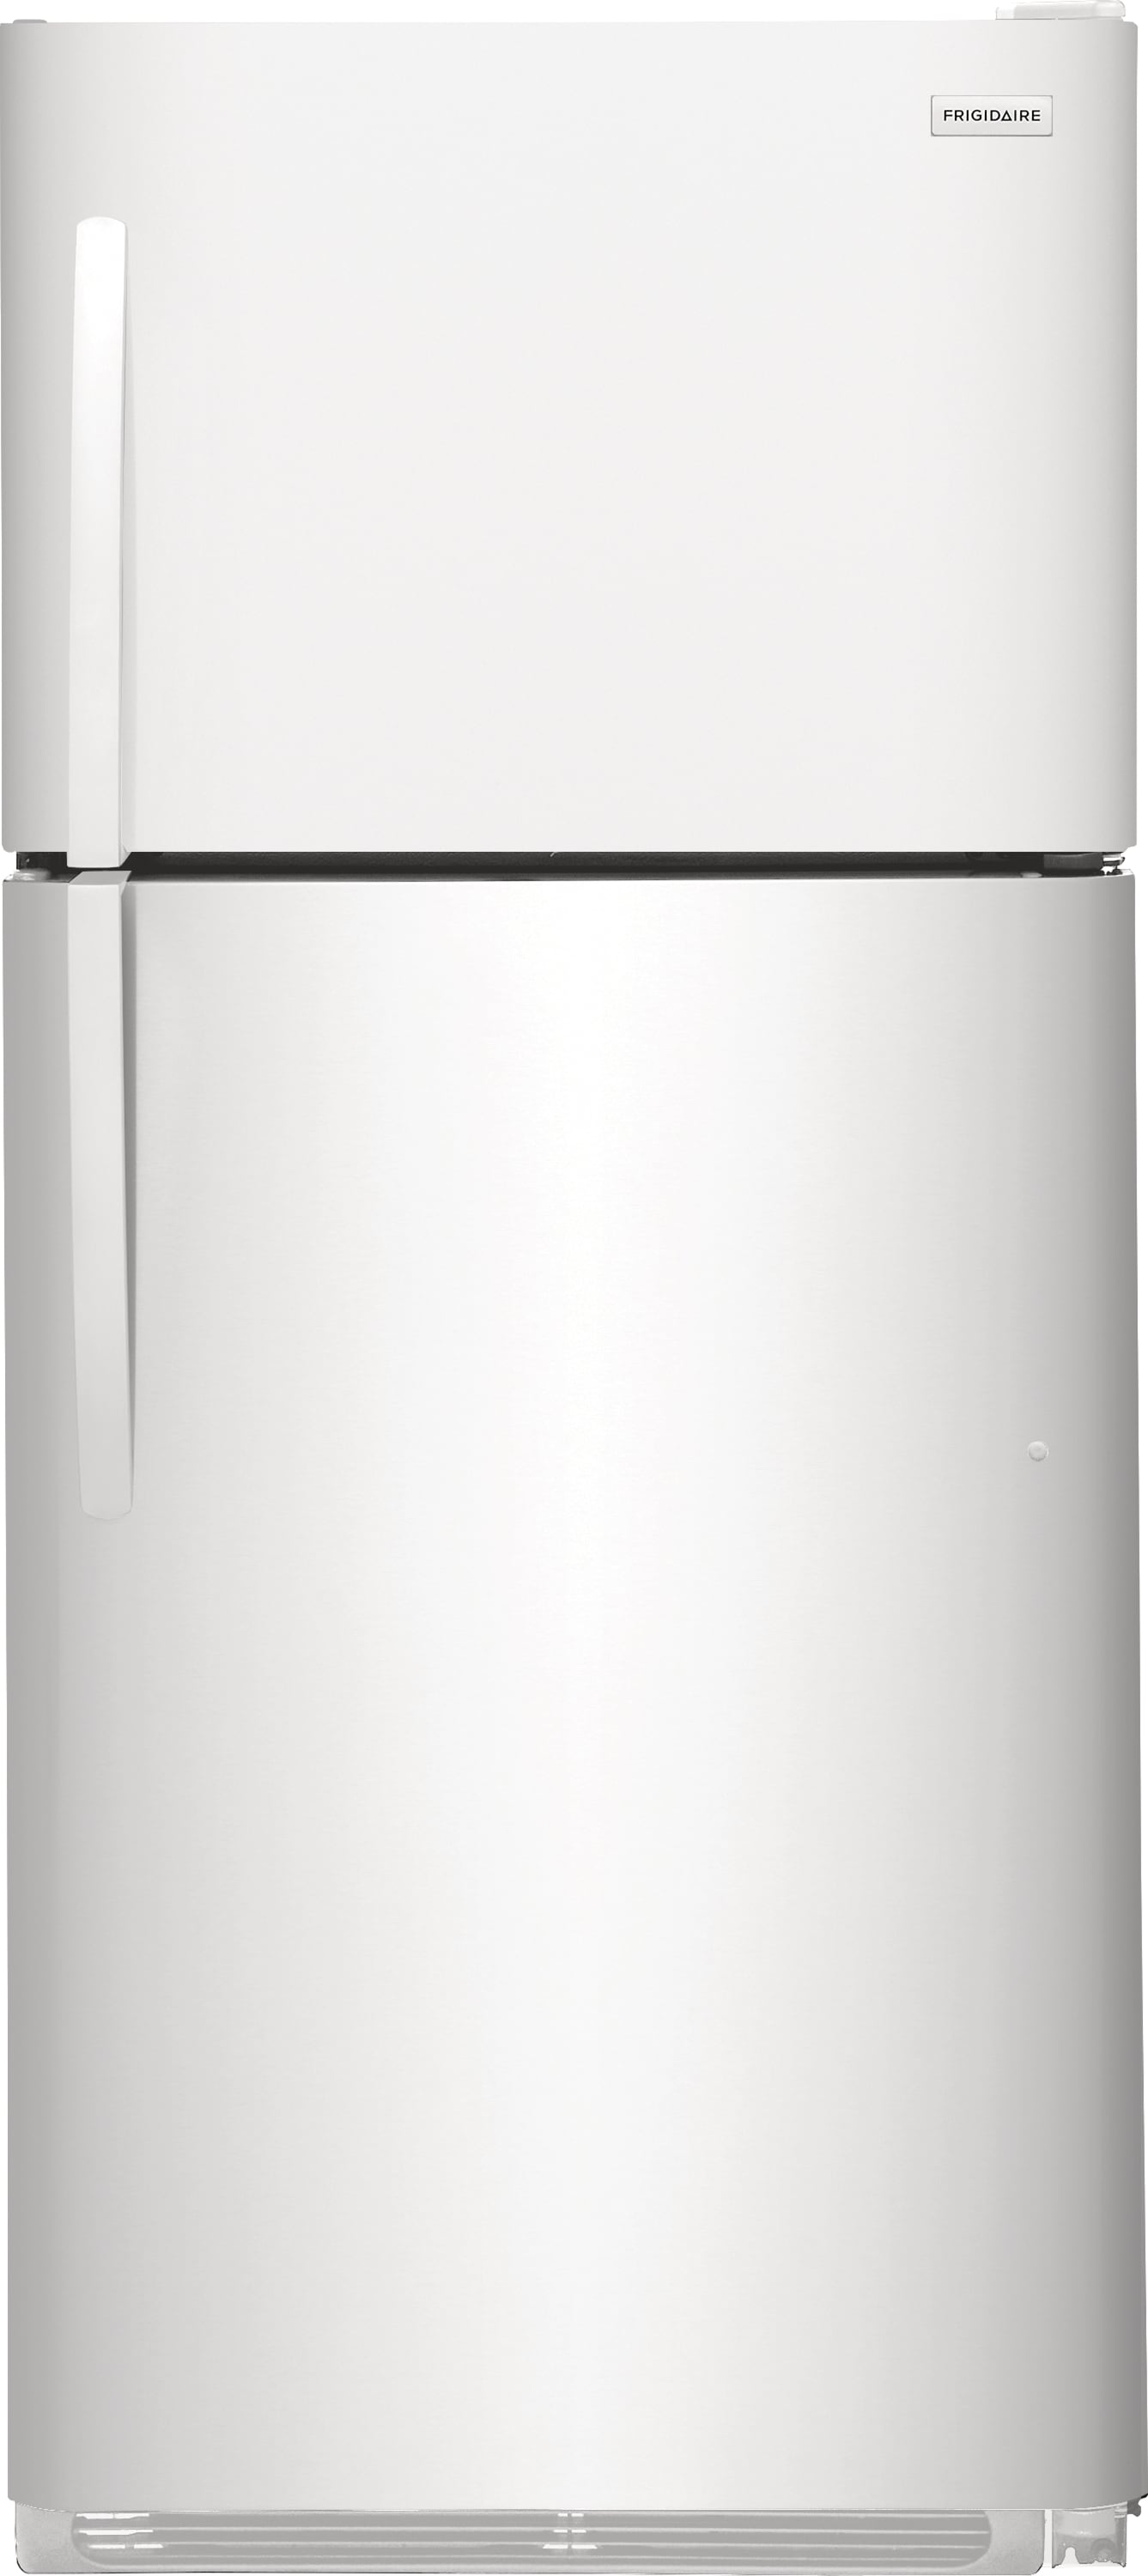 Frigidaire FRTD2021AW 20.5 cu. ft. Top Freezer Refrigerator - White